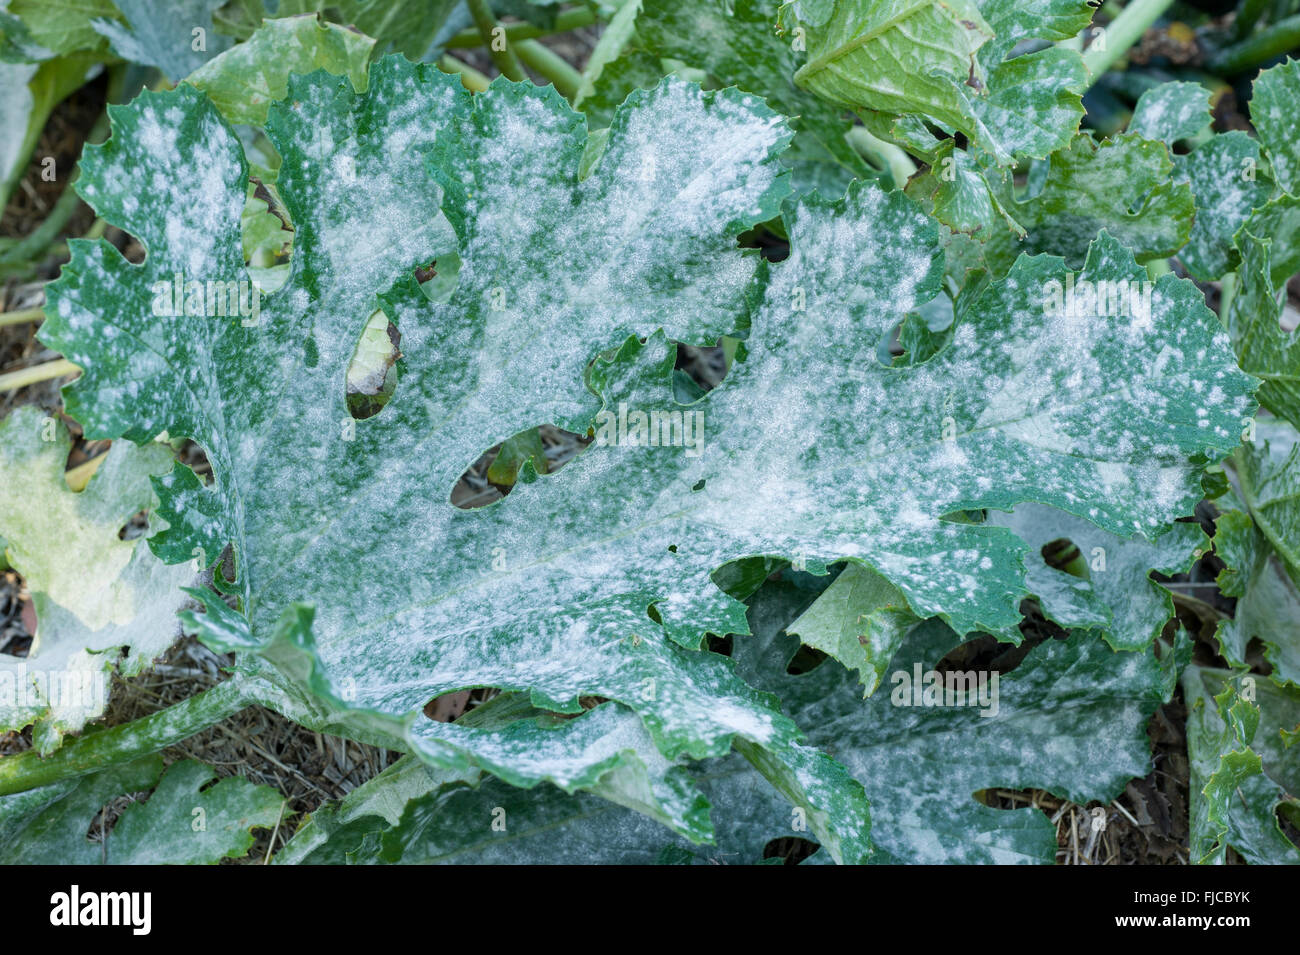 Powdery mildew on zucchini plant Stock Photo